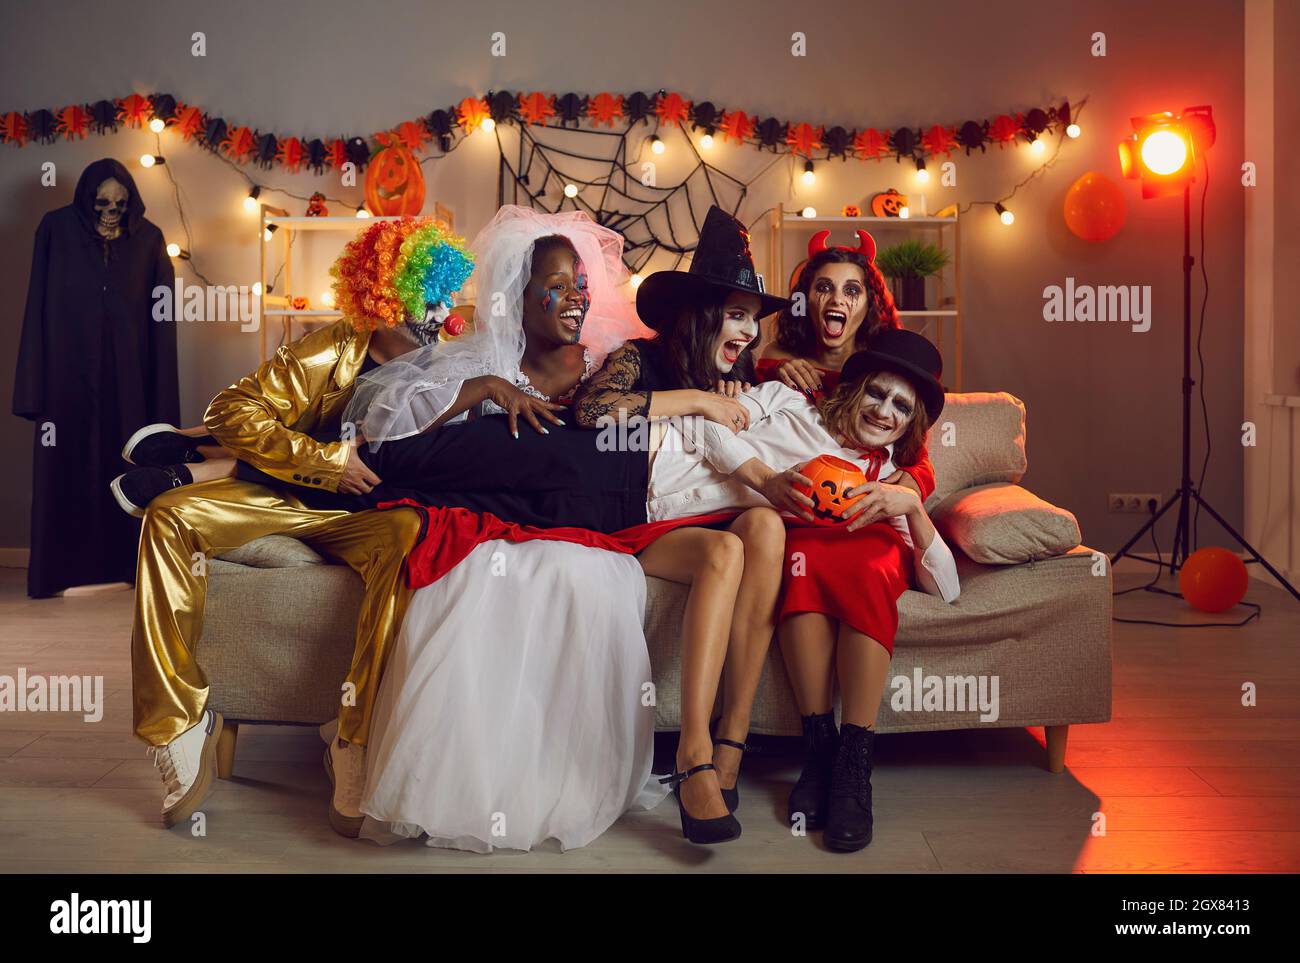 Gruppe von Freunden in gruseligen Kostümen lachen und haben Spaß auf einer Halloween-Party Stockfoto